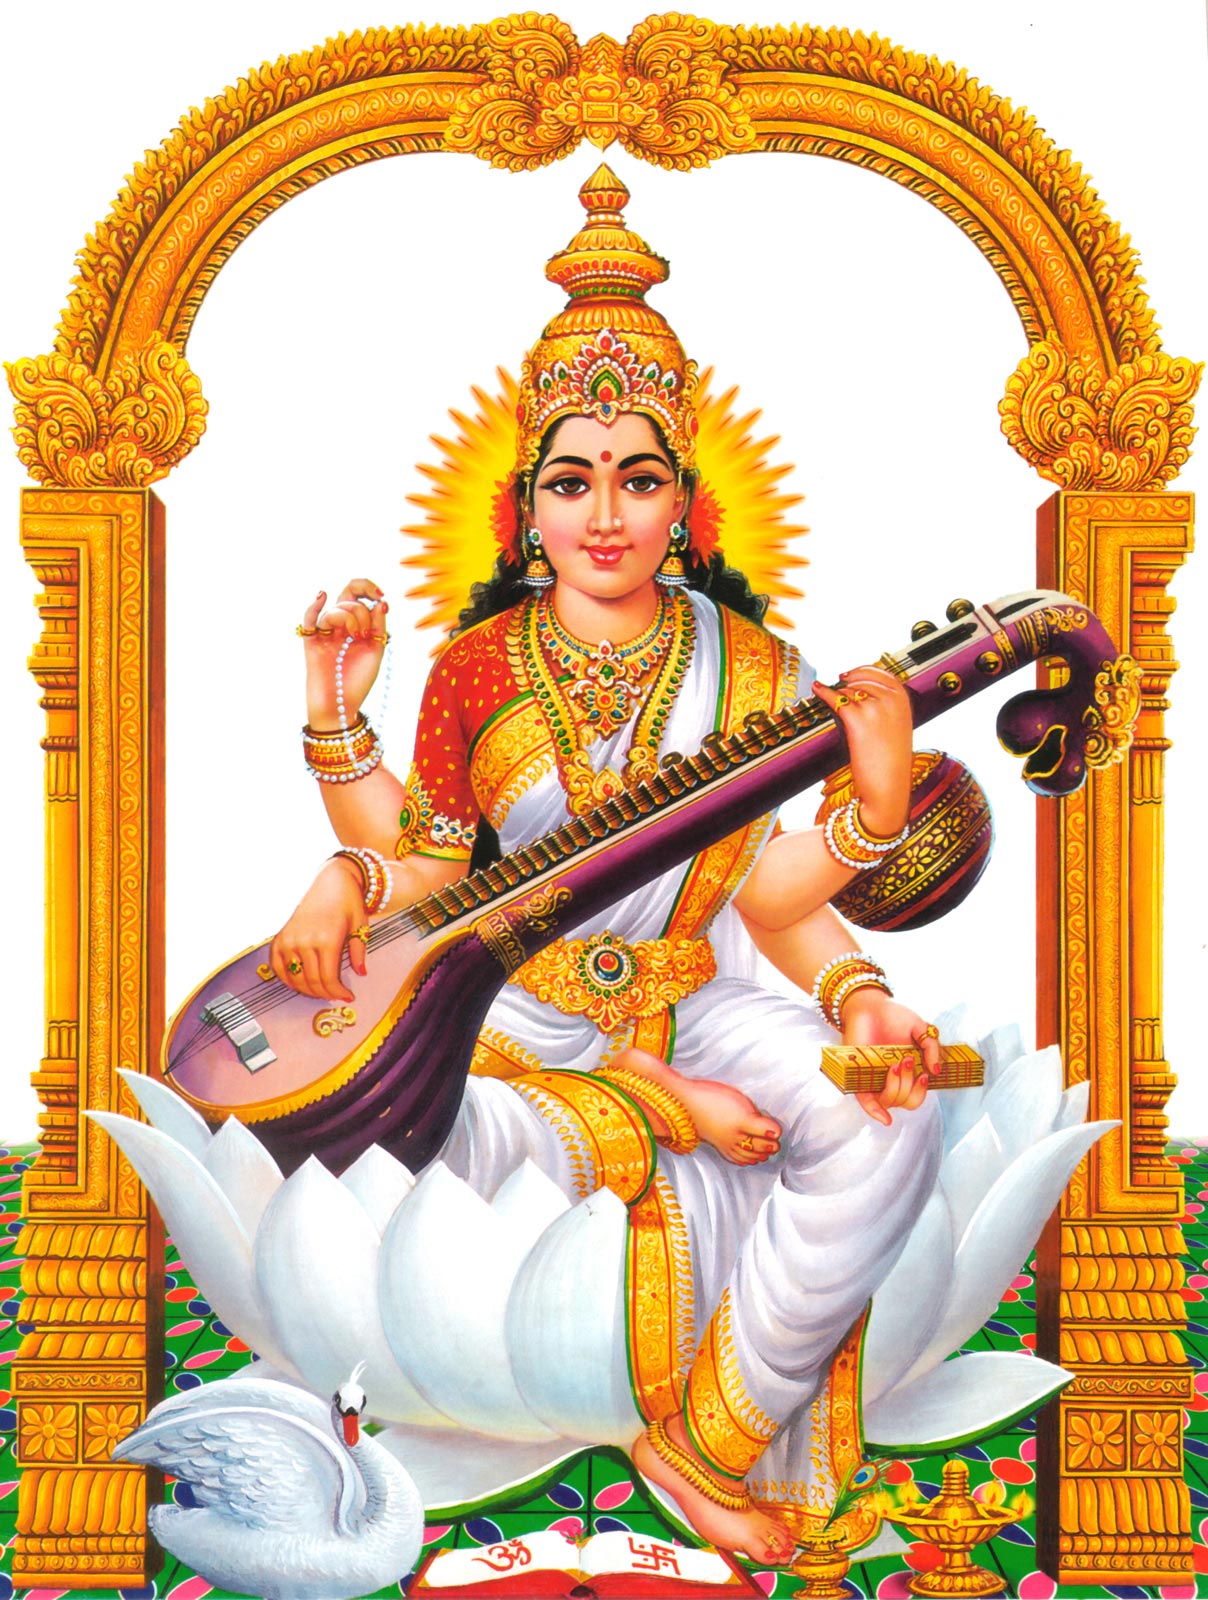 dios hindú fondos de pantalla hd 1920x1080,instrumentos musicales indios,instrumentos de cuerda pulsada,instrumento musical,gurú,templo hindú